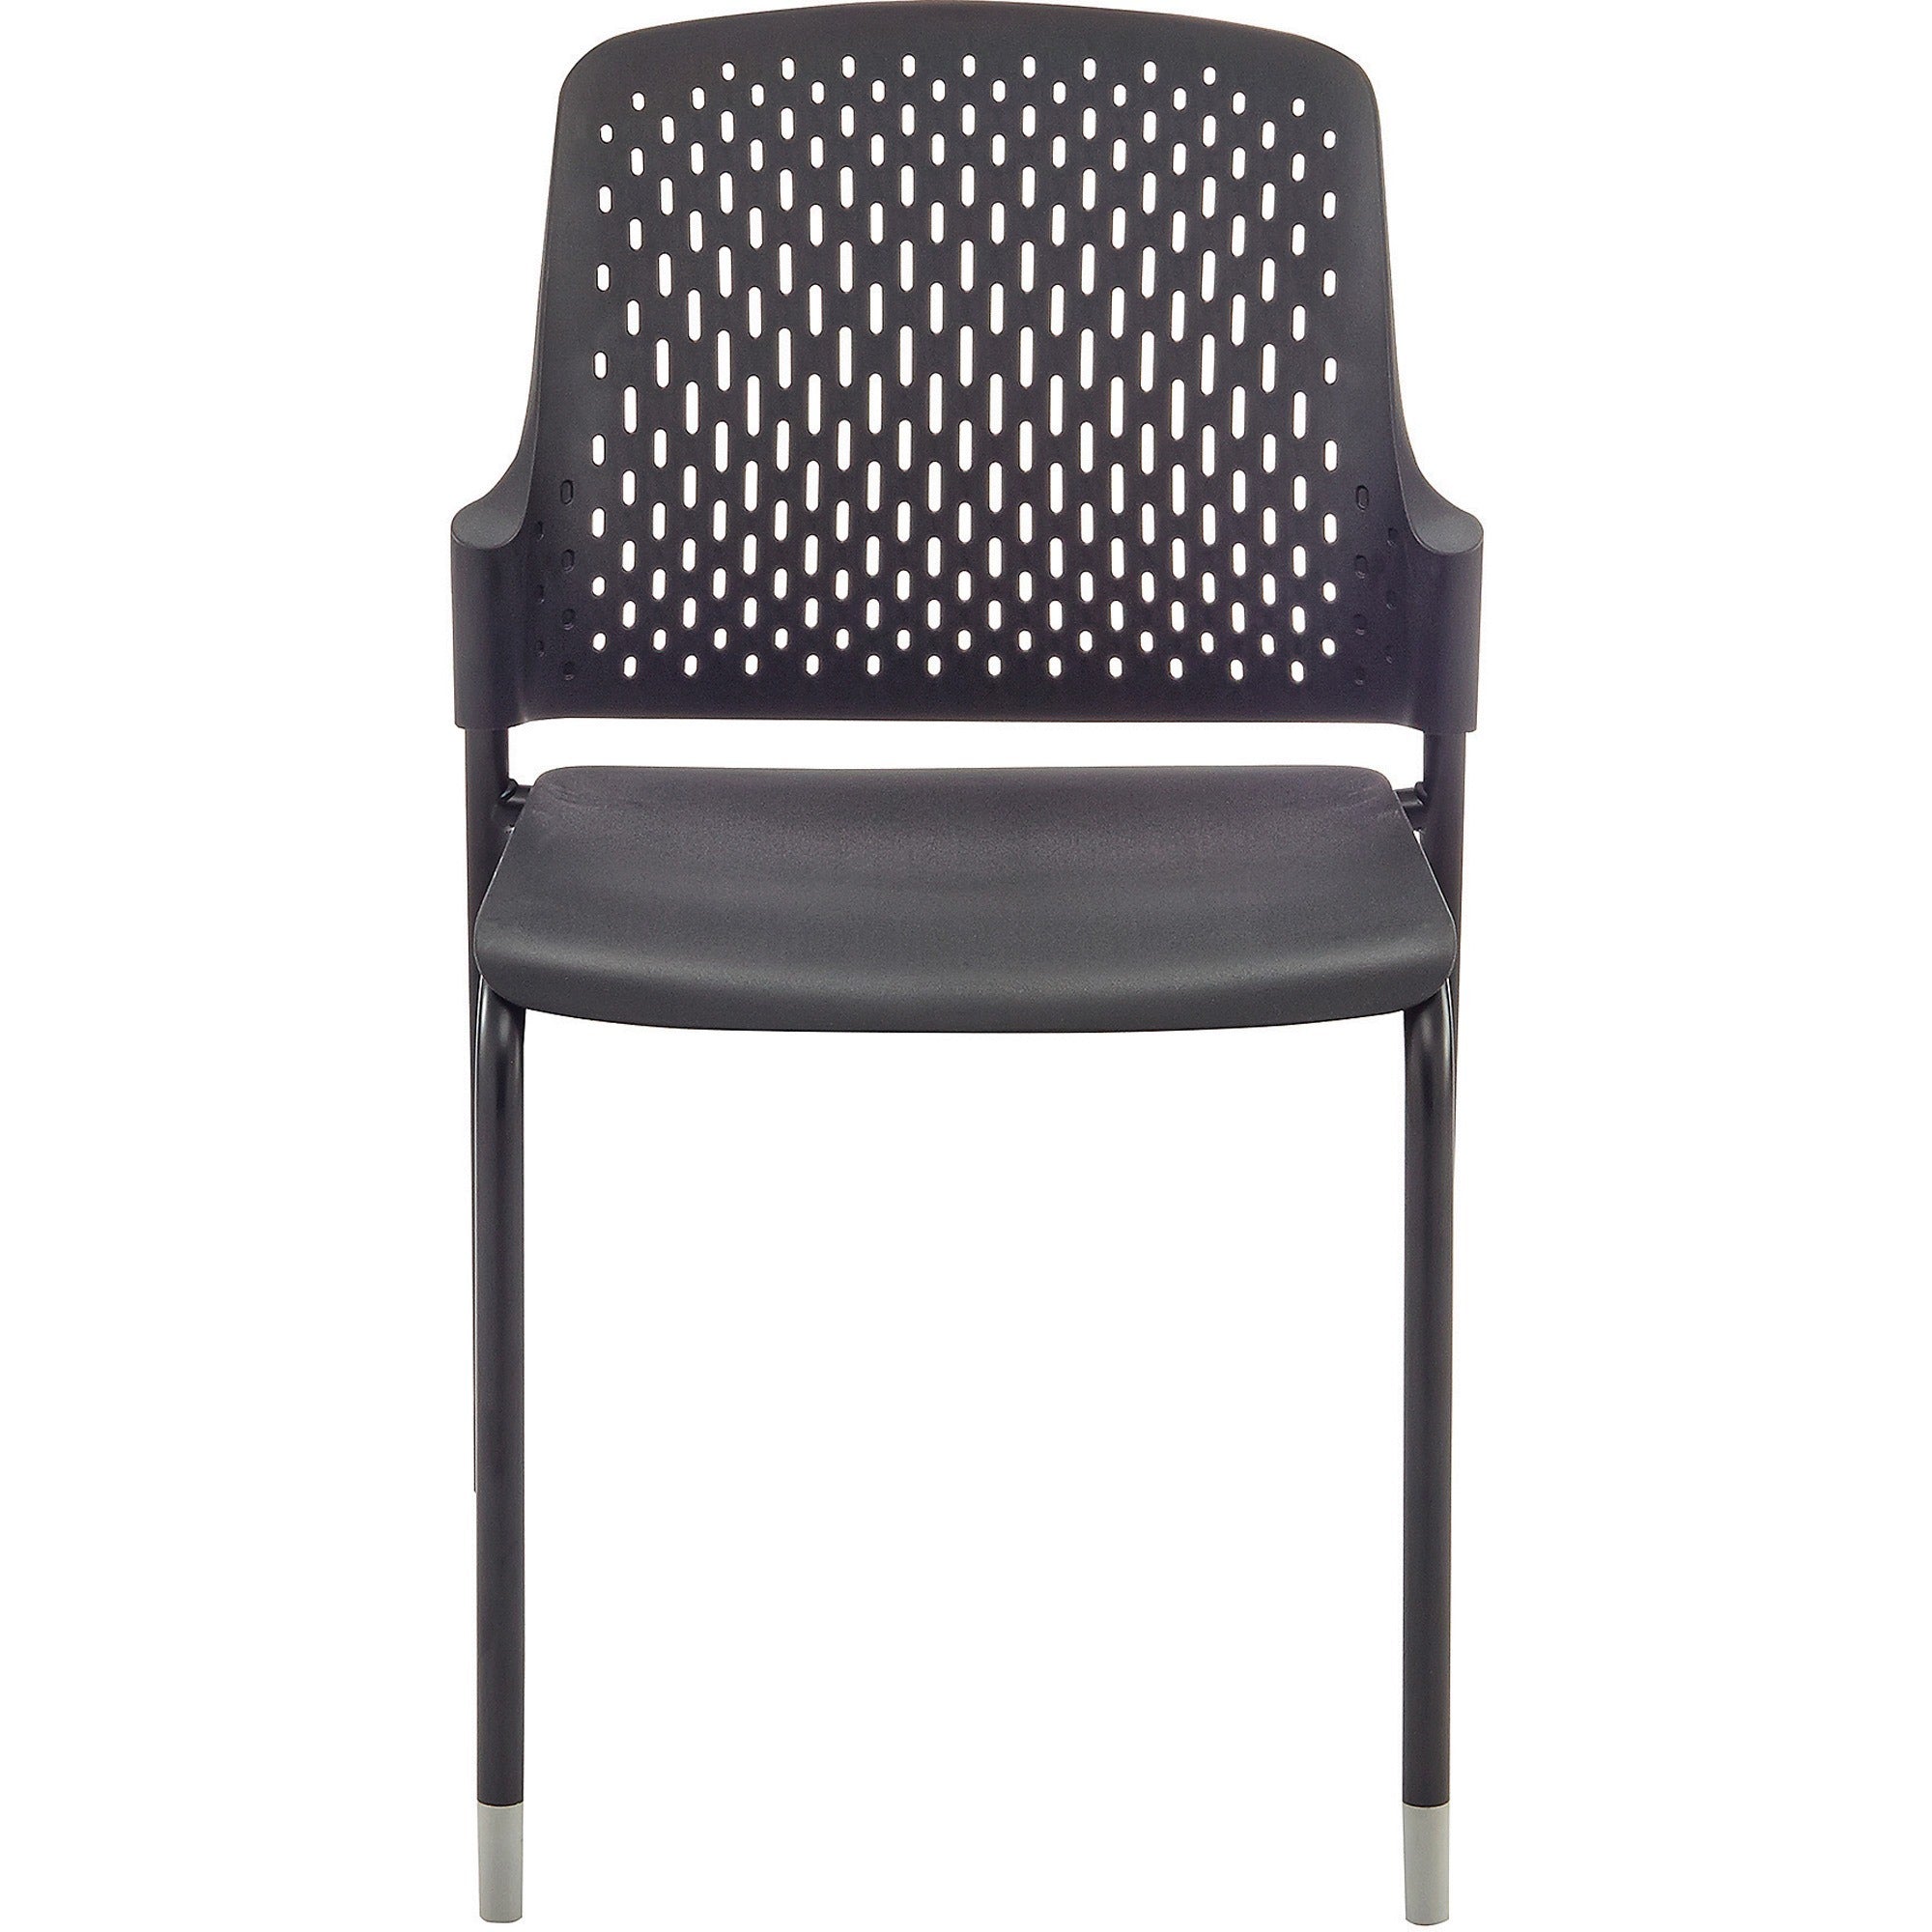 safco-next-stack-chair-black-polypropylene-seat-black-polypropylene-back-tubular-steel-frame-four-legged-base-4-carton_saf4287bl - 2